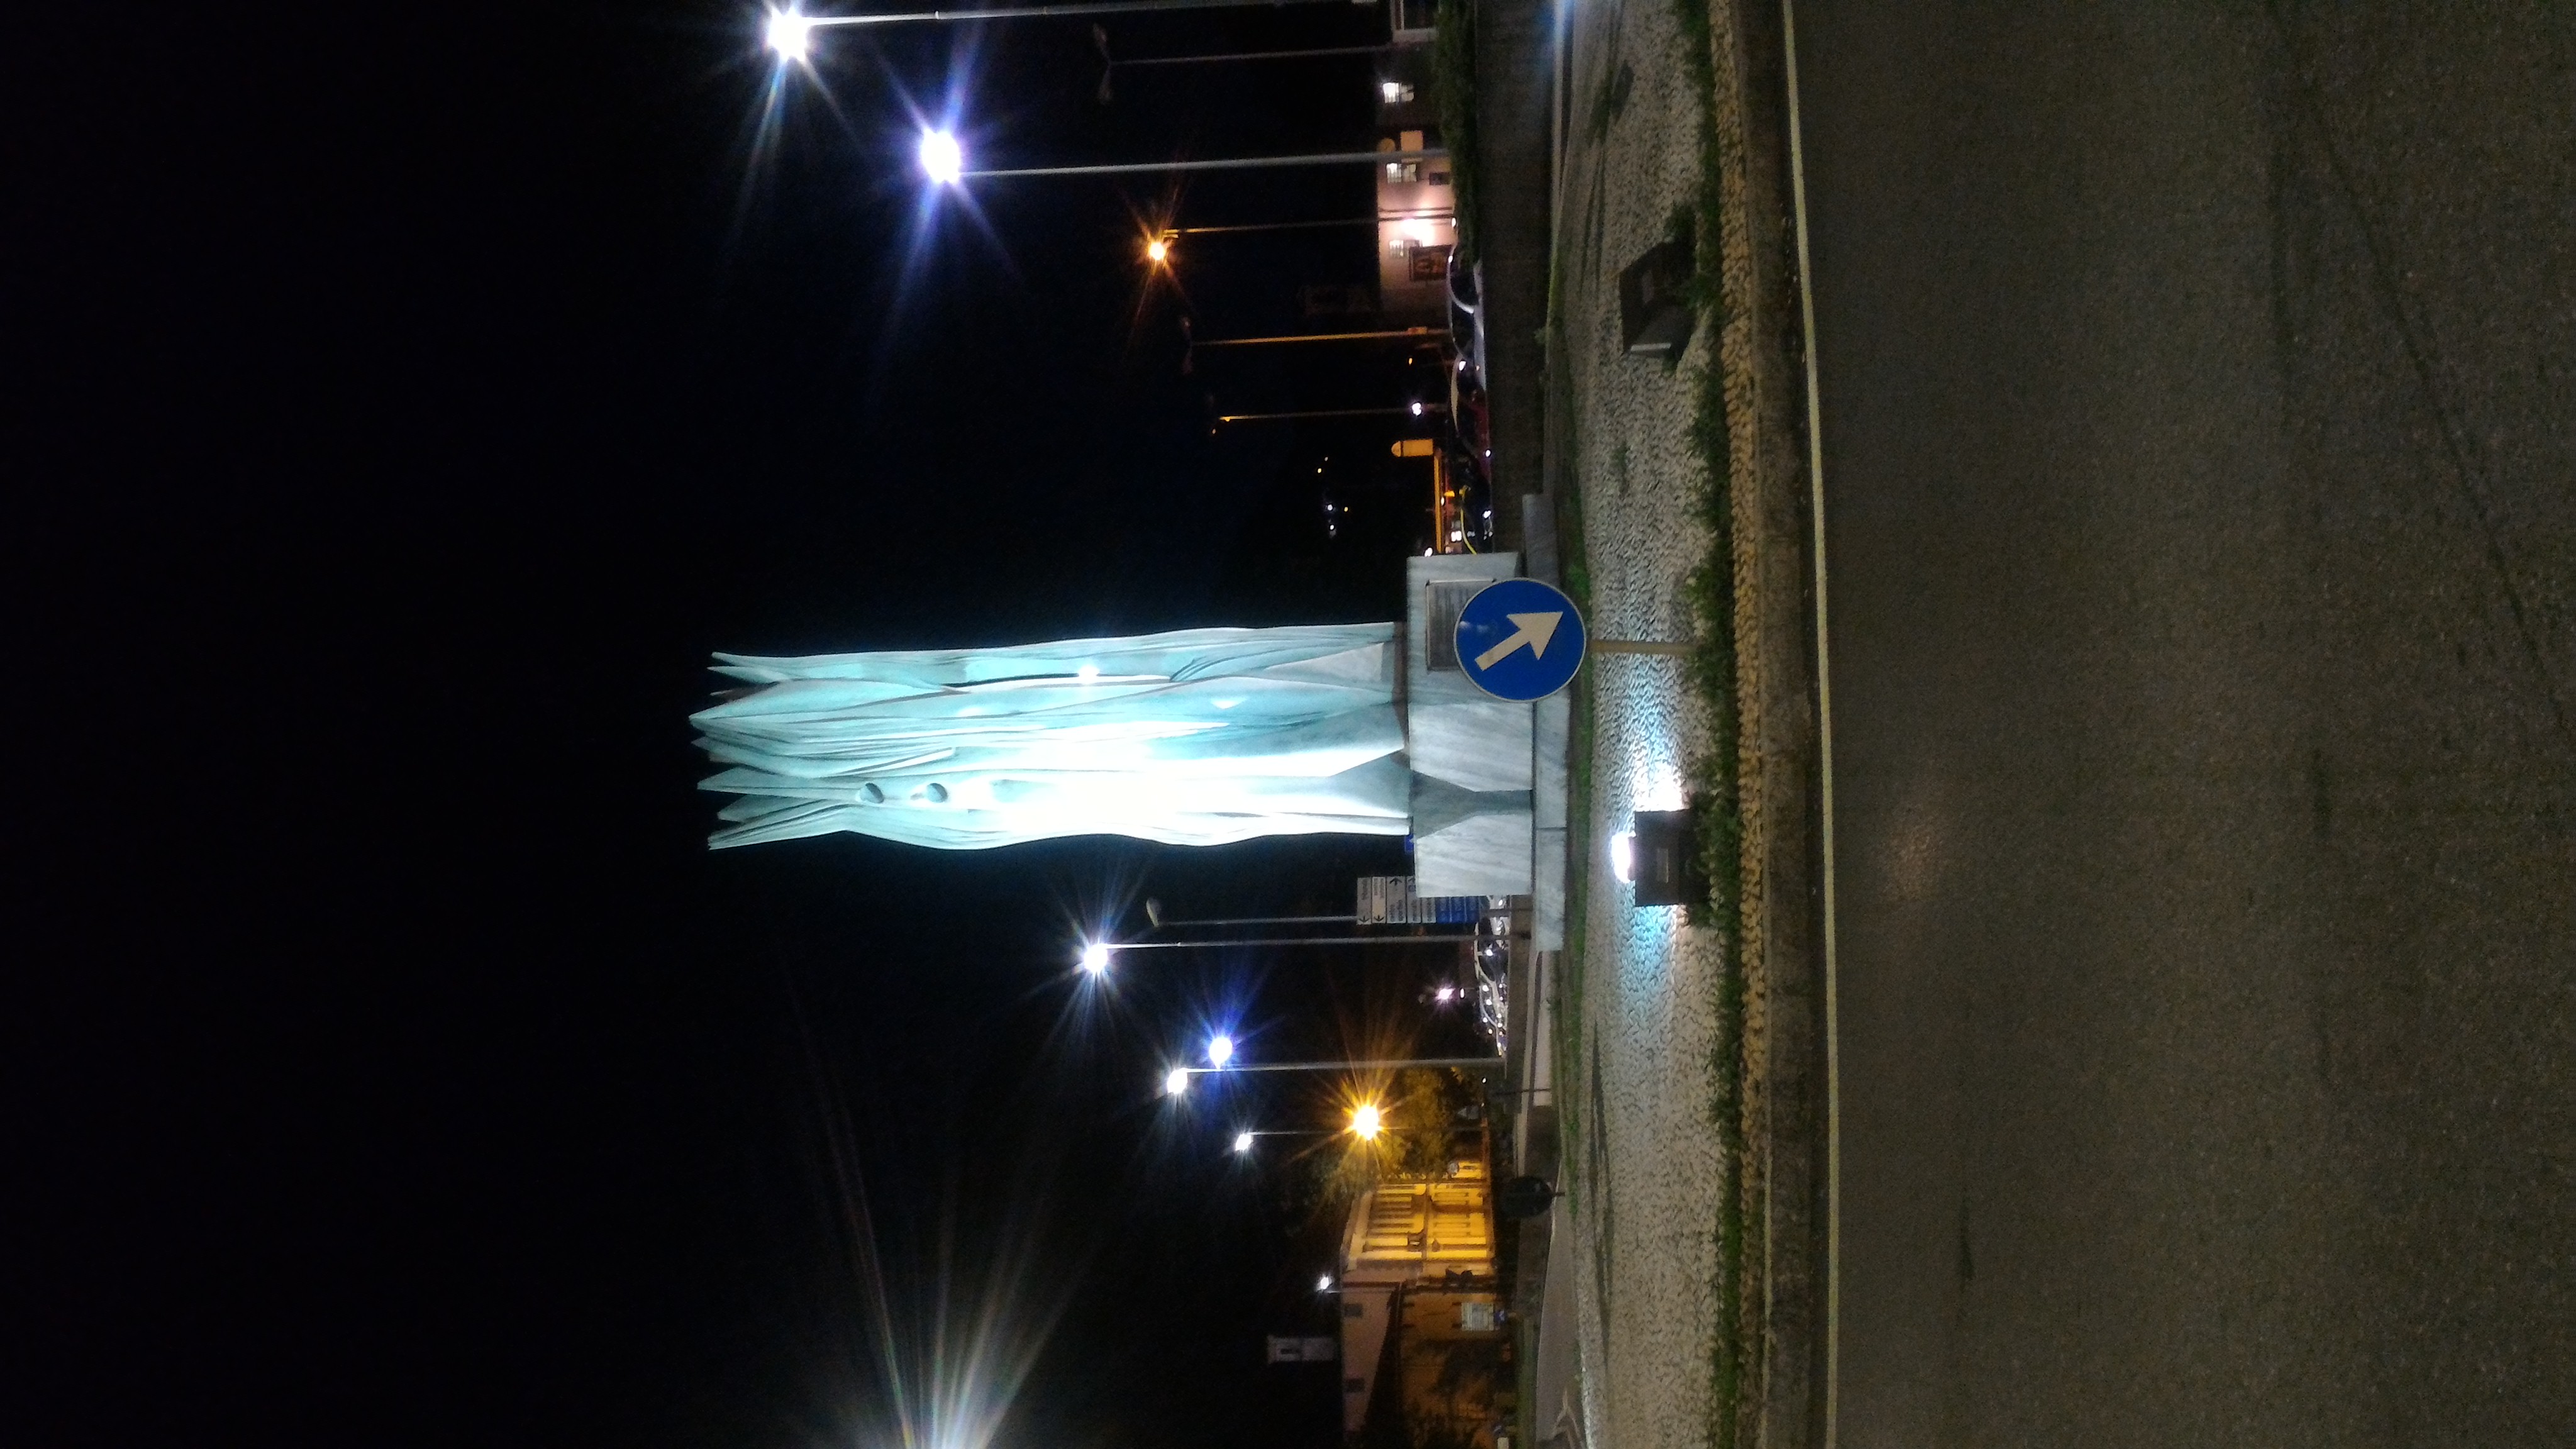 Monumento ai Caduti sul lavoro illuminato di azzurro - Lecco, Largo Caleotto 